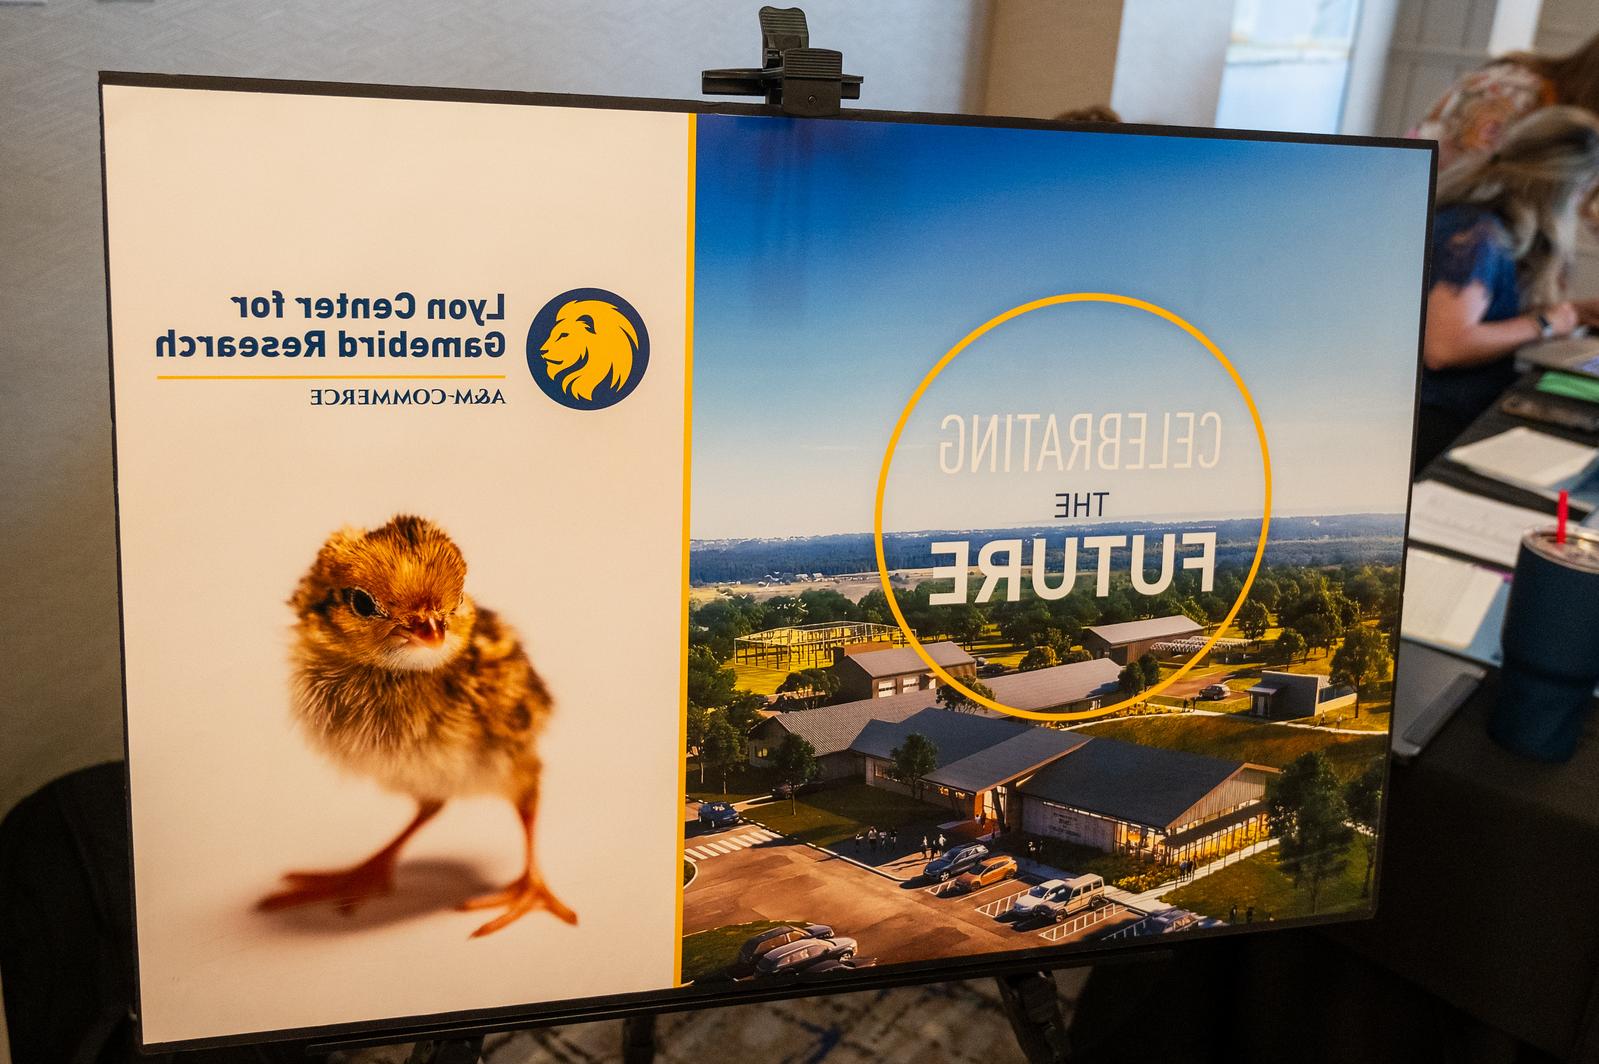 这是一张宣传新里昂中心的海报照片. 海报的左侧是计算机生成的中心图像. 海报的右侧是一只鹌鹑小鸡.